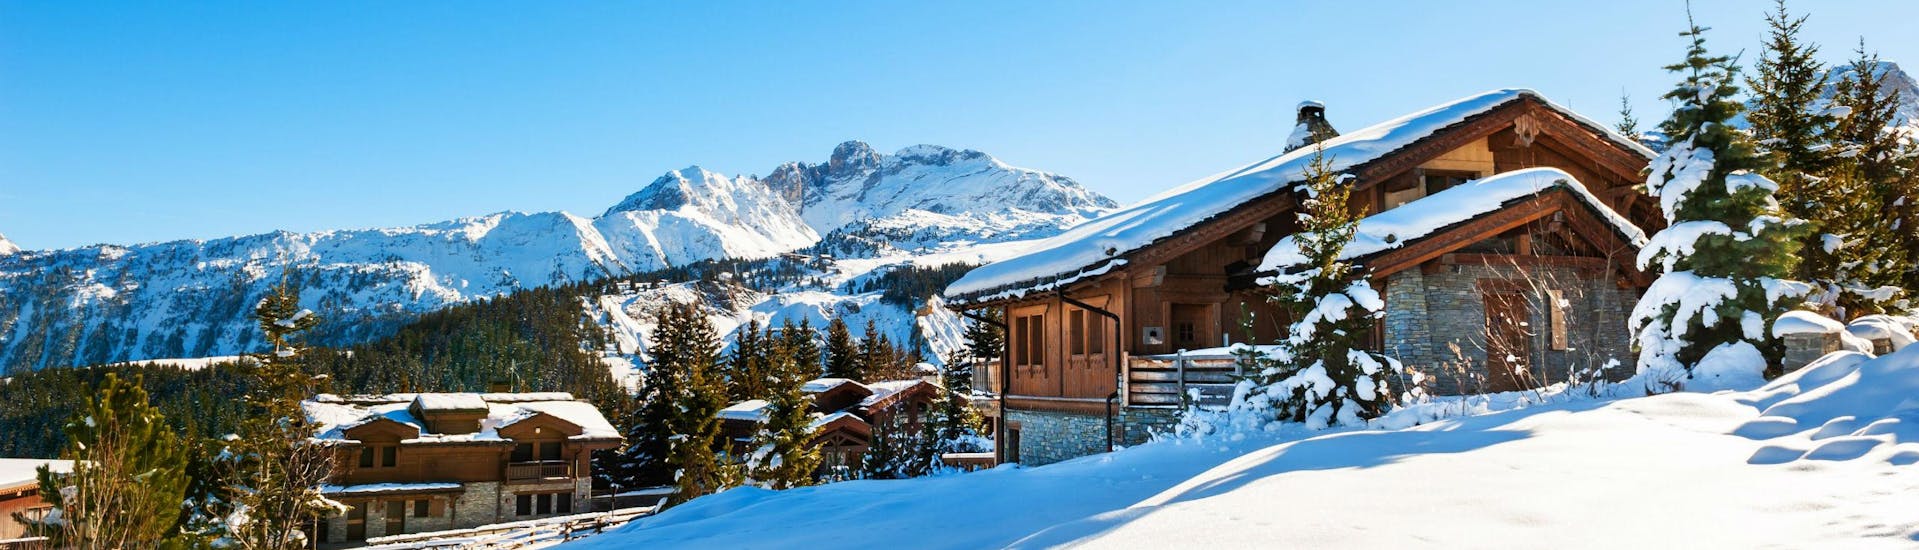 Ein Blick auf ein paar schneebedeckte Berghütten im französischen Skigebiet Courchevel, wo Besucher bei den von den örtlichen Skischulen organisierten Skikursen das Skifahren lernen können.